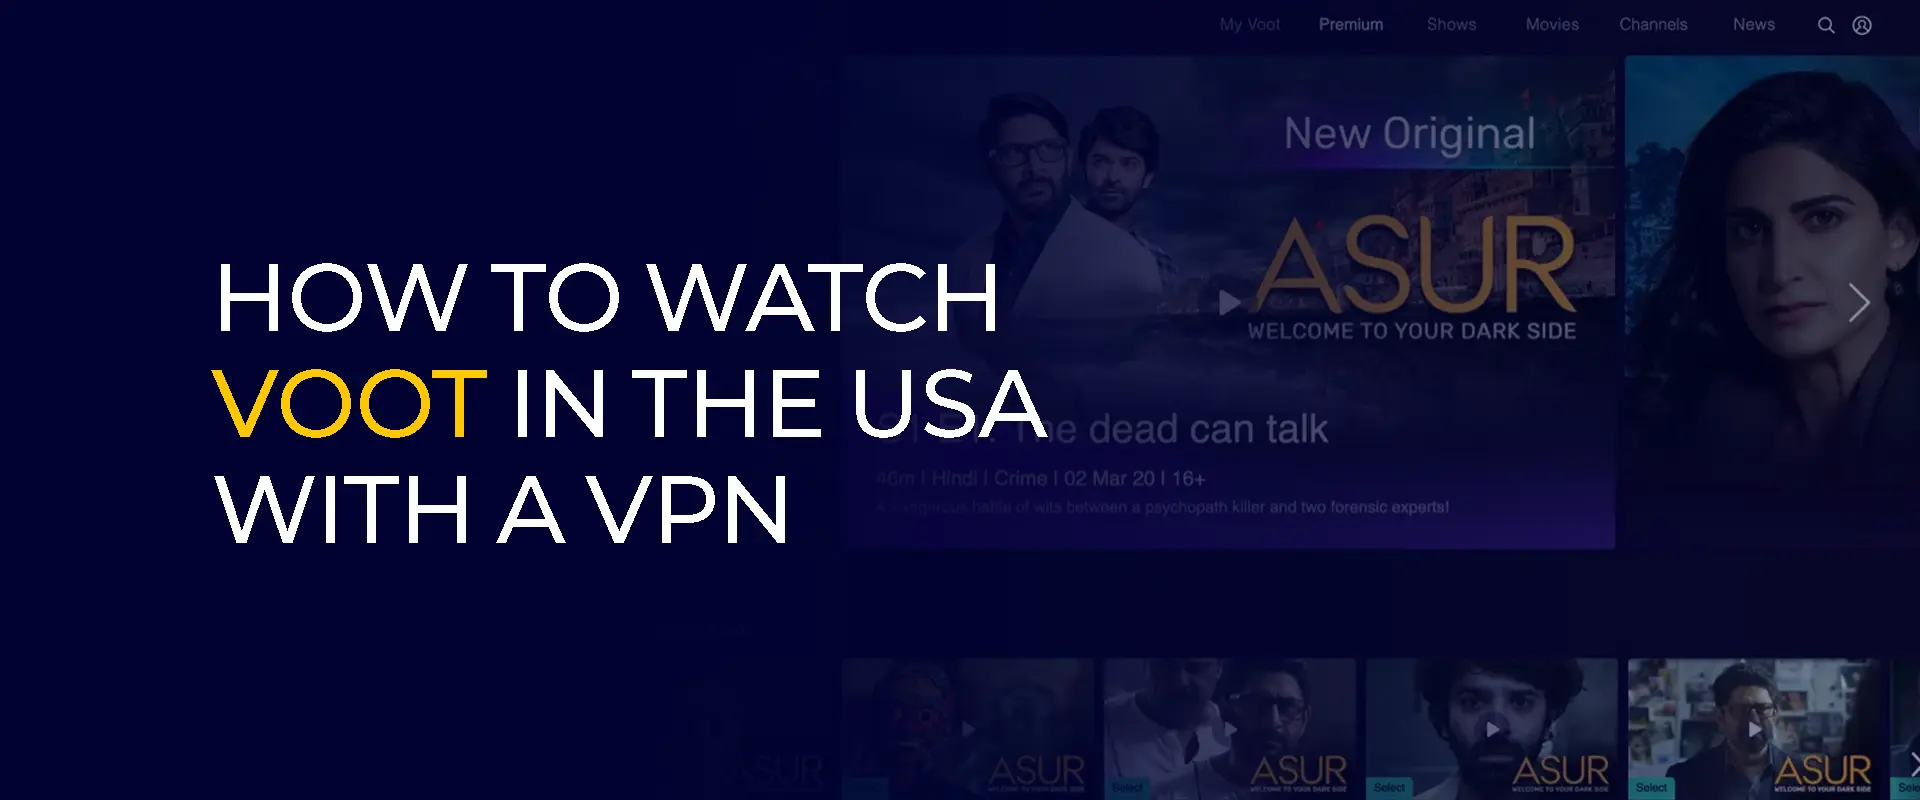 Cómo ver Voot en EE. UU. con una VPN